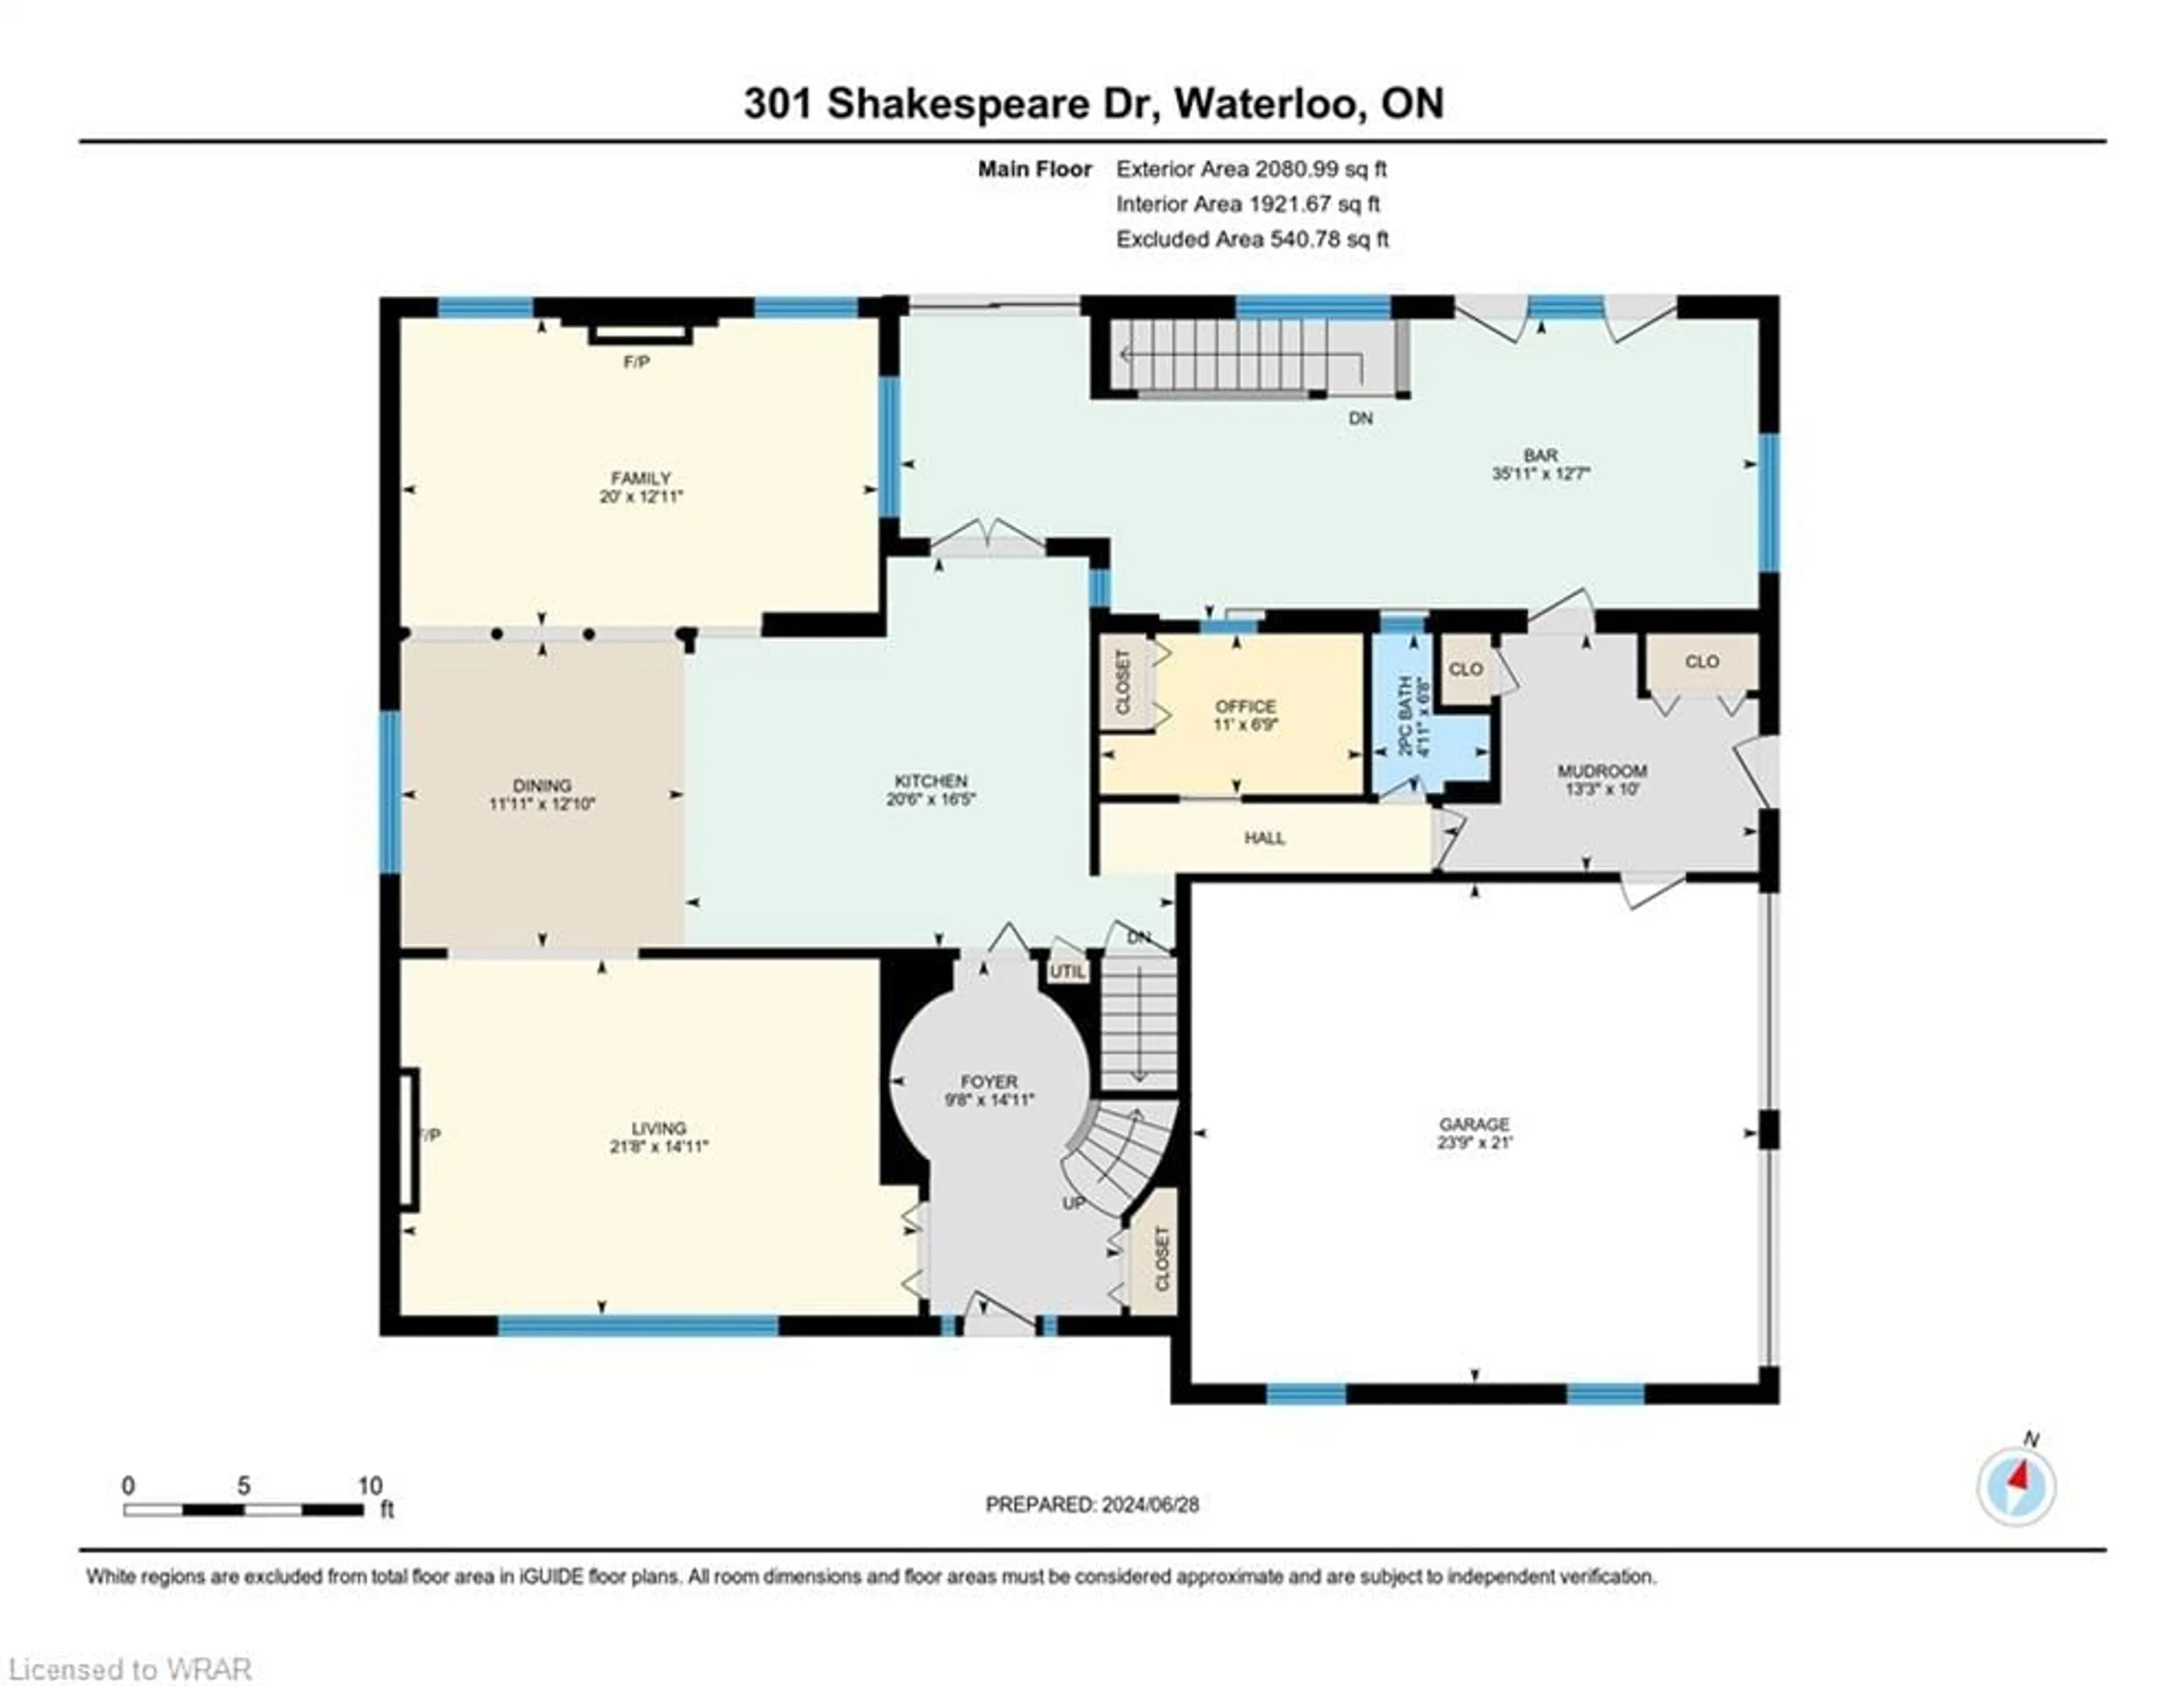 Floor plan for 301 Shakespeare Dr, Waterloo Ontario N2L 2T9